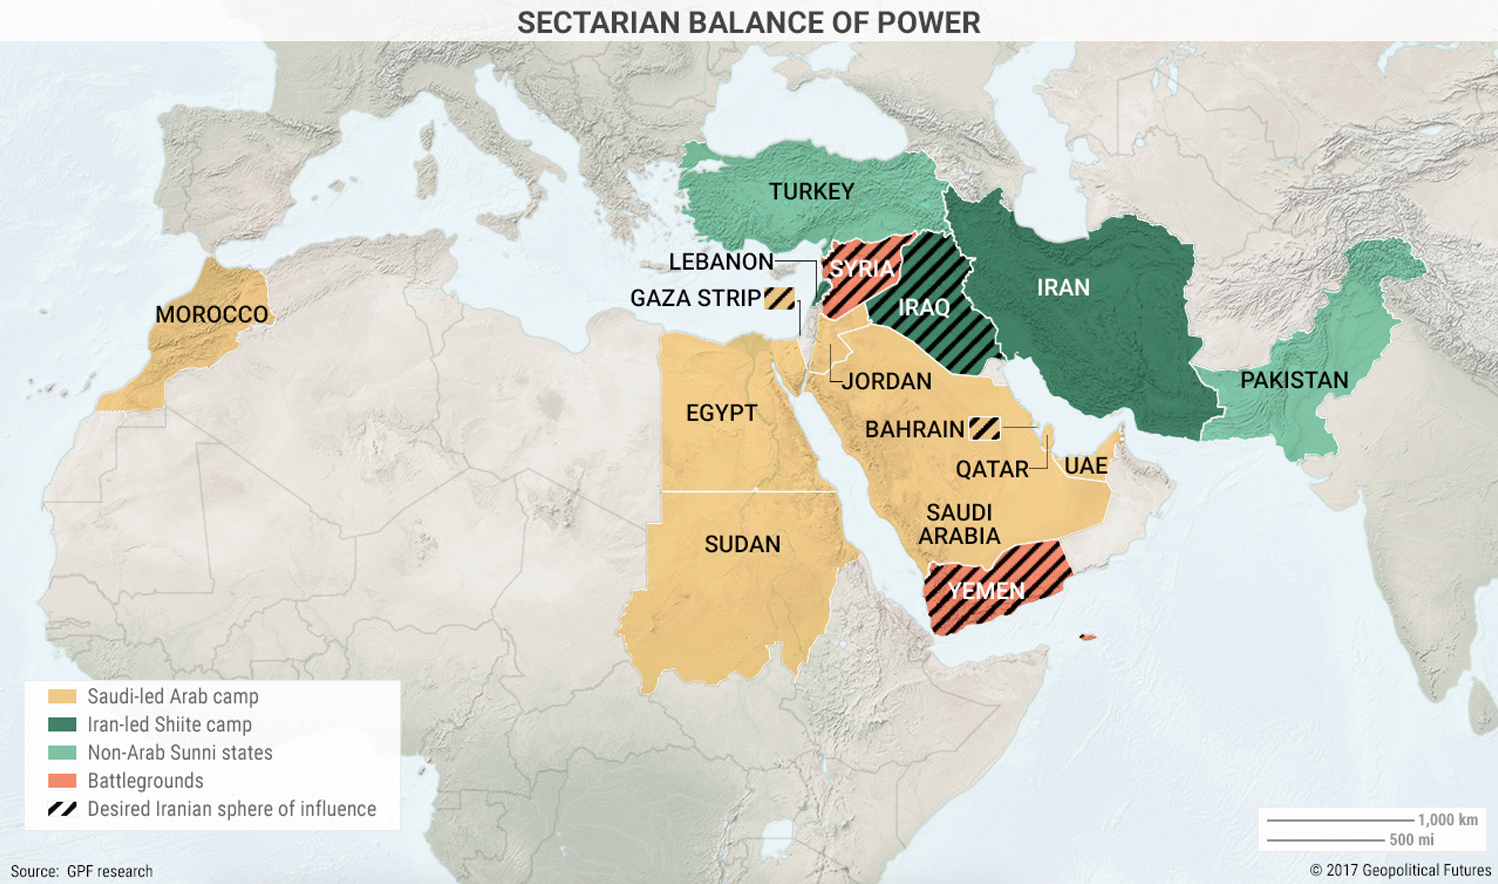 پنج نقشه که تحولات جدید در خاورمیانه را تشریح میکند / قدرت گیری شیعیان در برابر سنی ها در سیکل 500 ساله تحولات